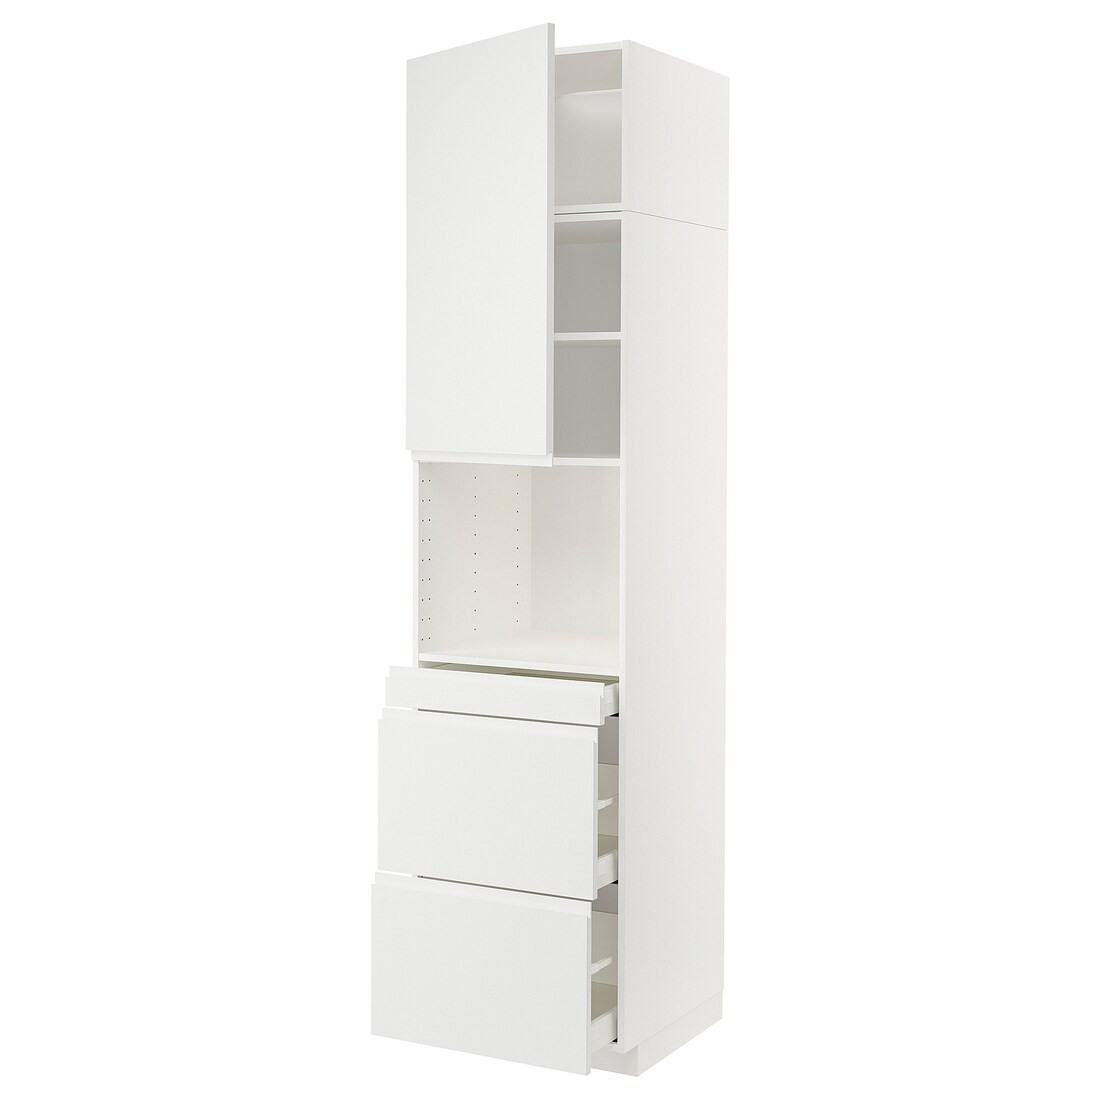 IKEA METOD МЕТОД / MAXIMERA МАКСИМЕРА Высокий шкаф для СВЧ / дверца / 3 ящика, белый / Voxtorp матовый белый, 60x60x240 см 29458705 | 294.587.05